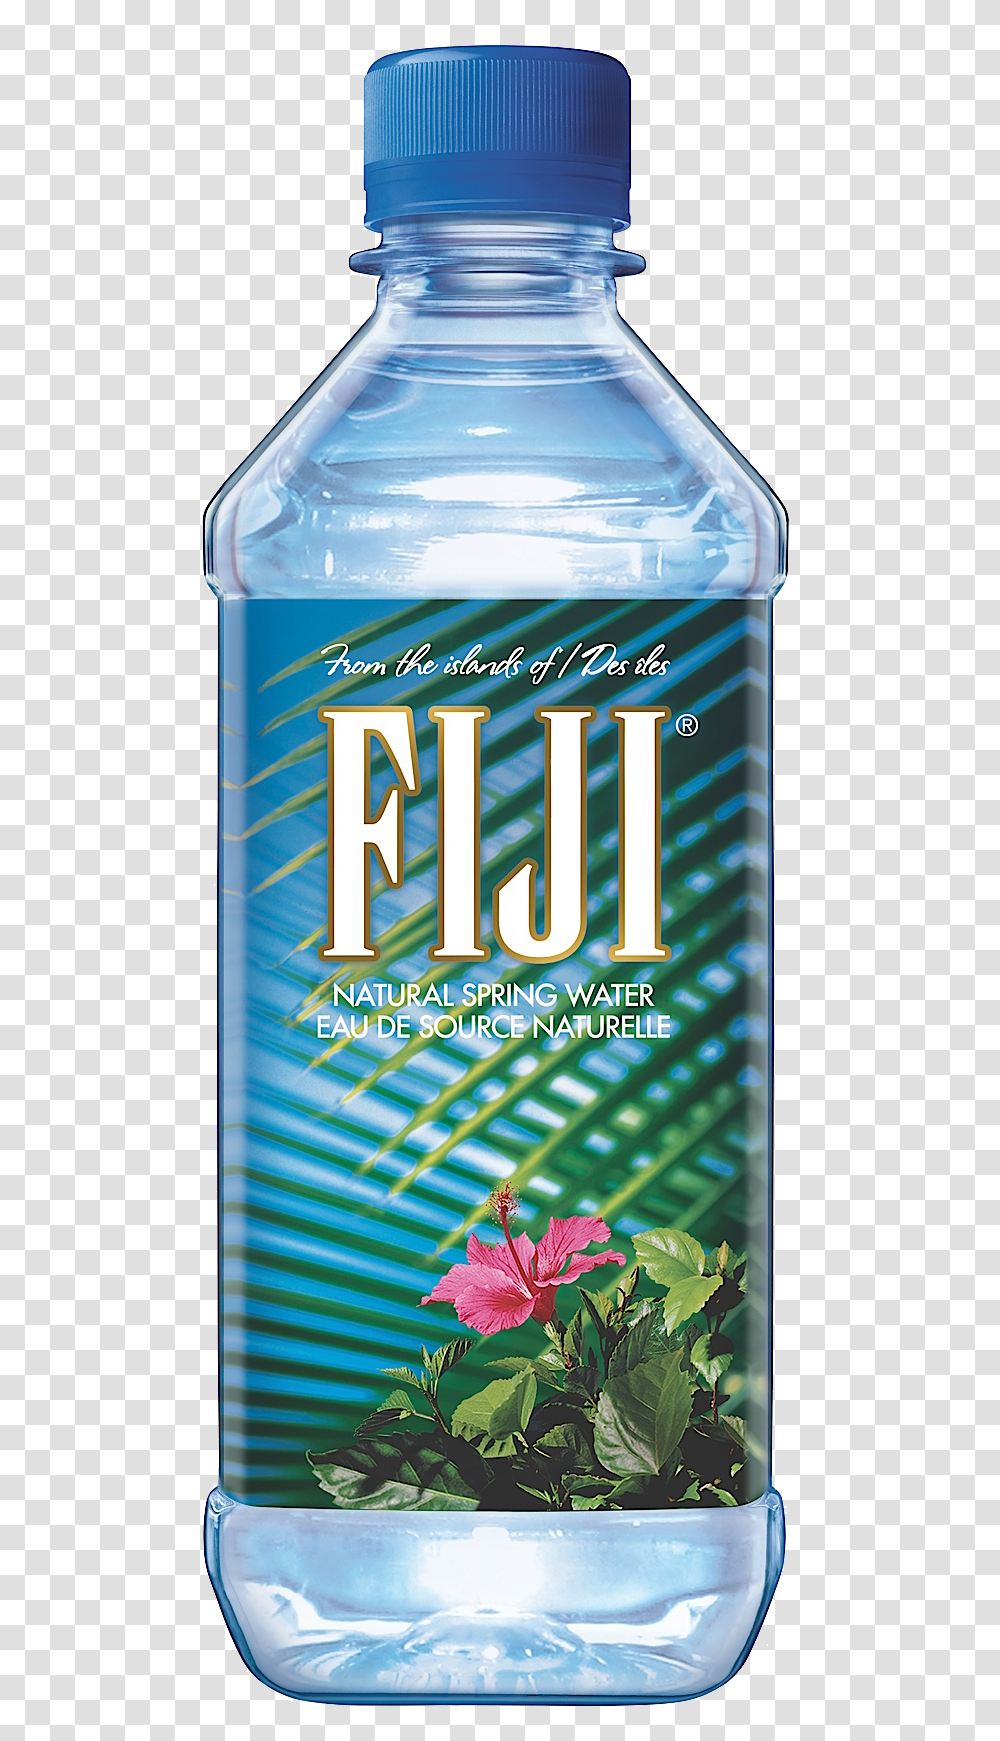 Download Water Bottled Fiji Distilled Free Image Fiji Water Bottle, Beer, Alcohol, Beverage, Advertisement Transparent Png